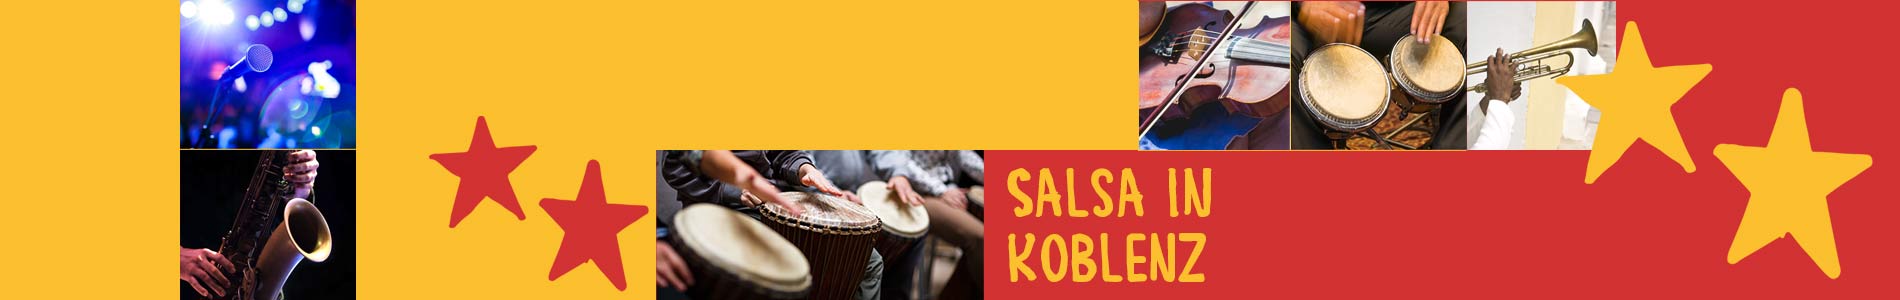 Salsa in Koblenz – Salsa lernen und tanzen, Tanzkurse, Partys, Veranstaltungen